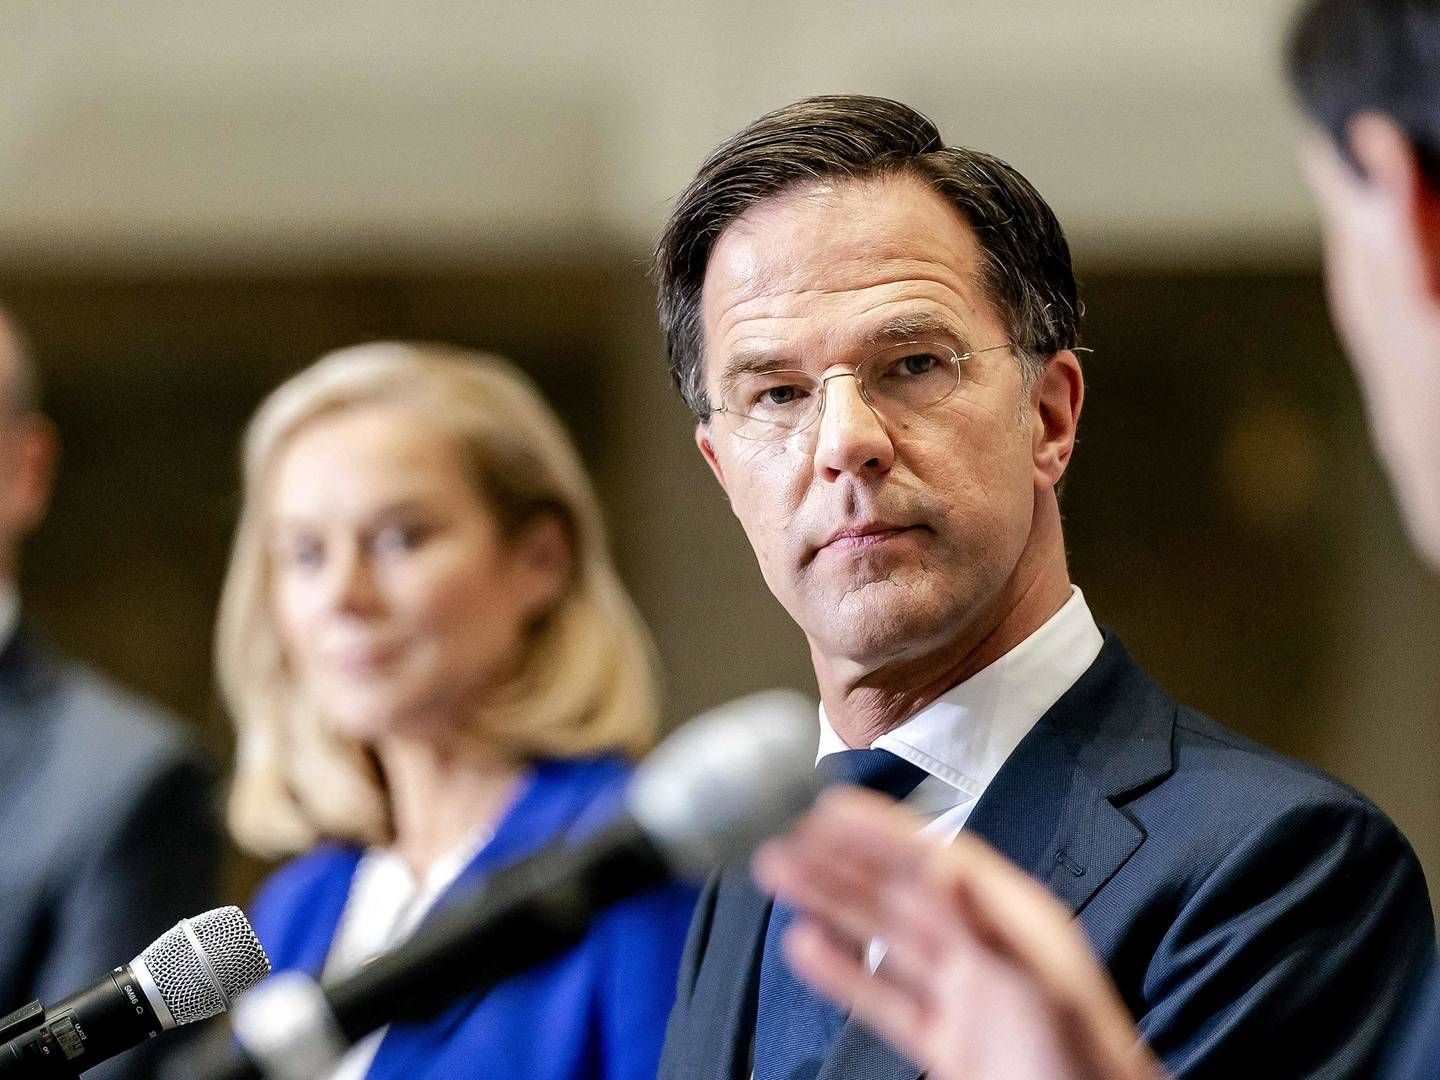 Premierminister Mark Rutte (i midten) i præsentation af den nye regeringskoalition. | Foto: Bart Maat/AFP / ANP